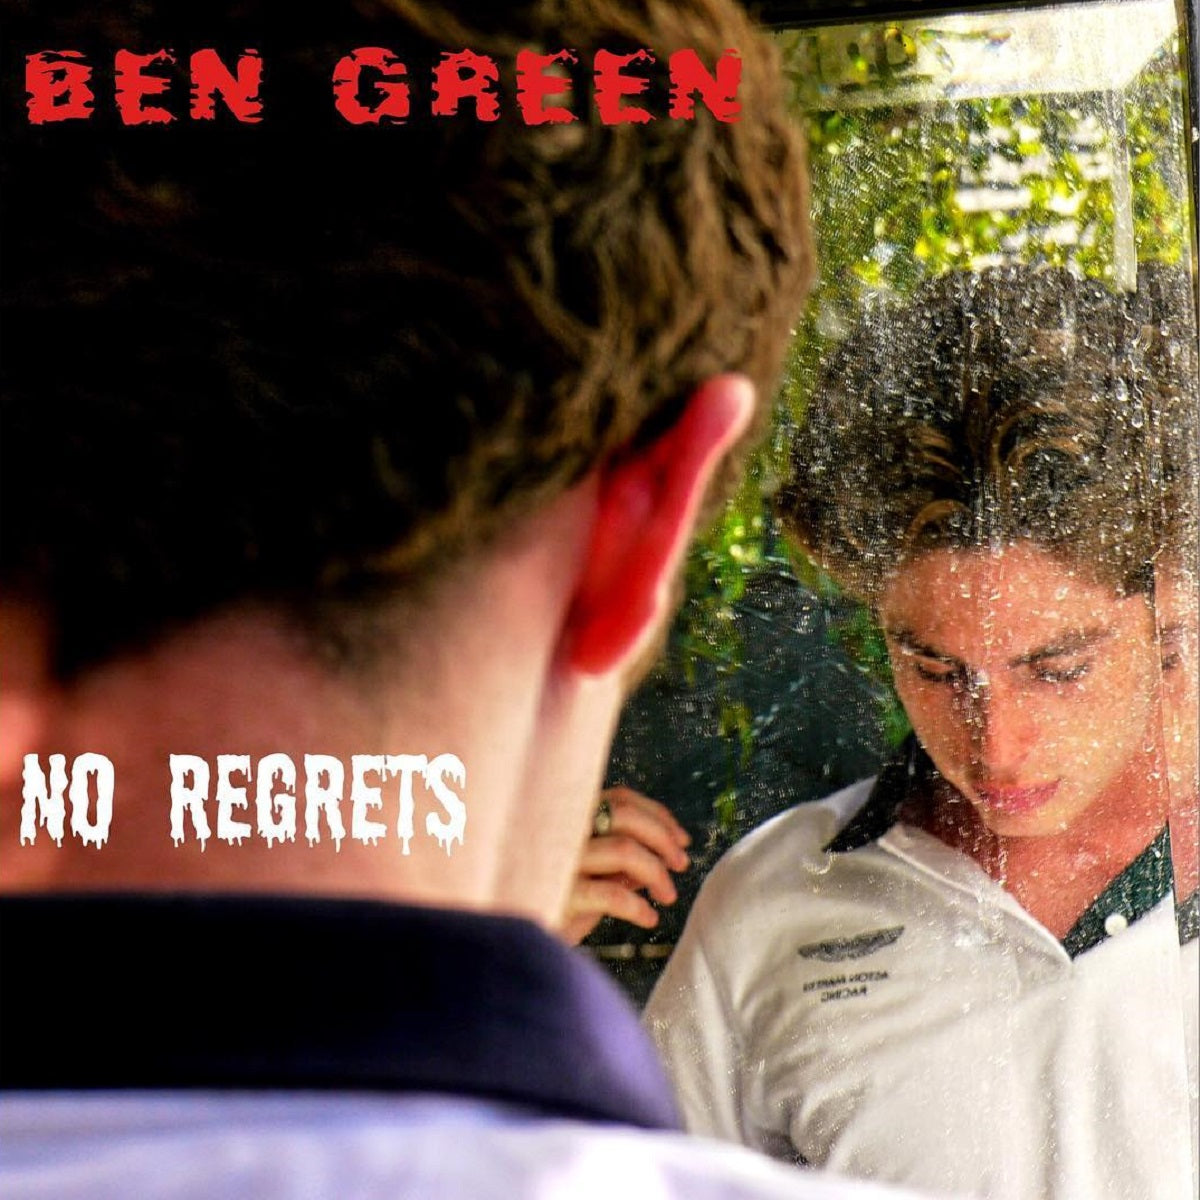 Ben Green - 'No Regrets'